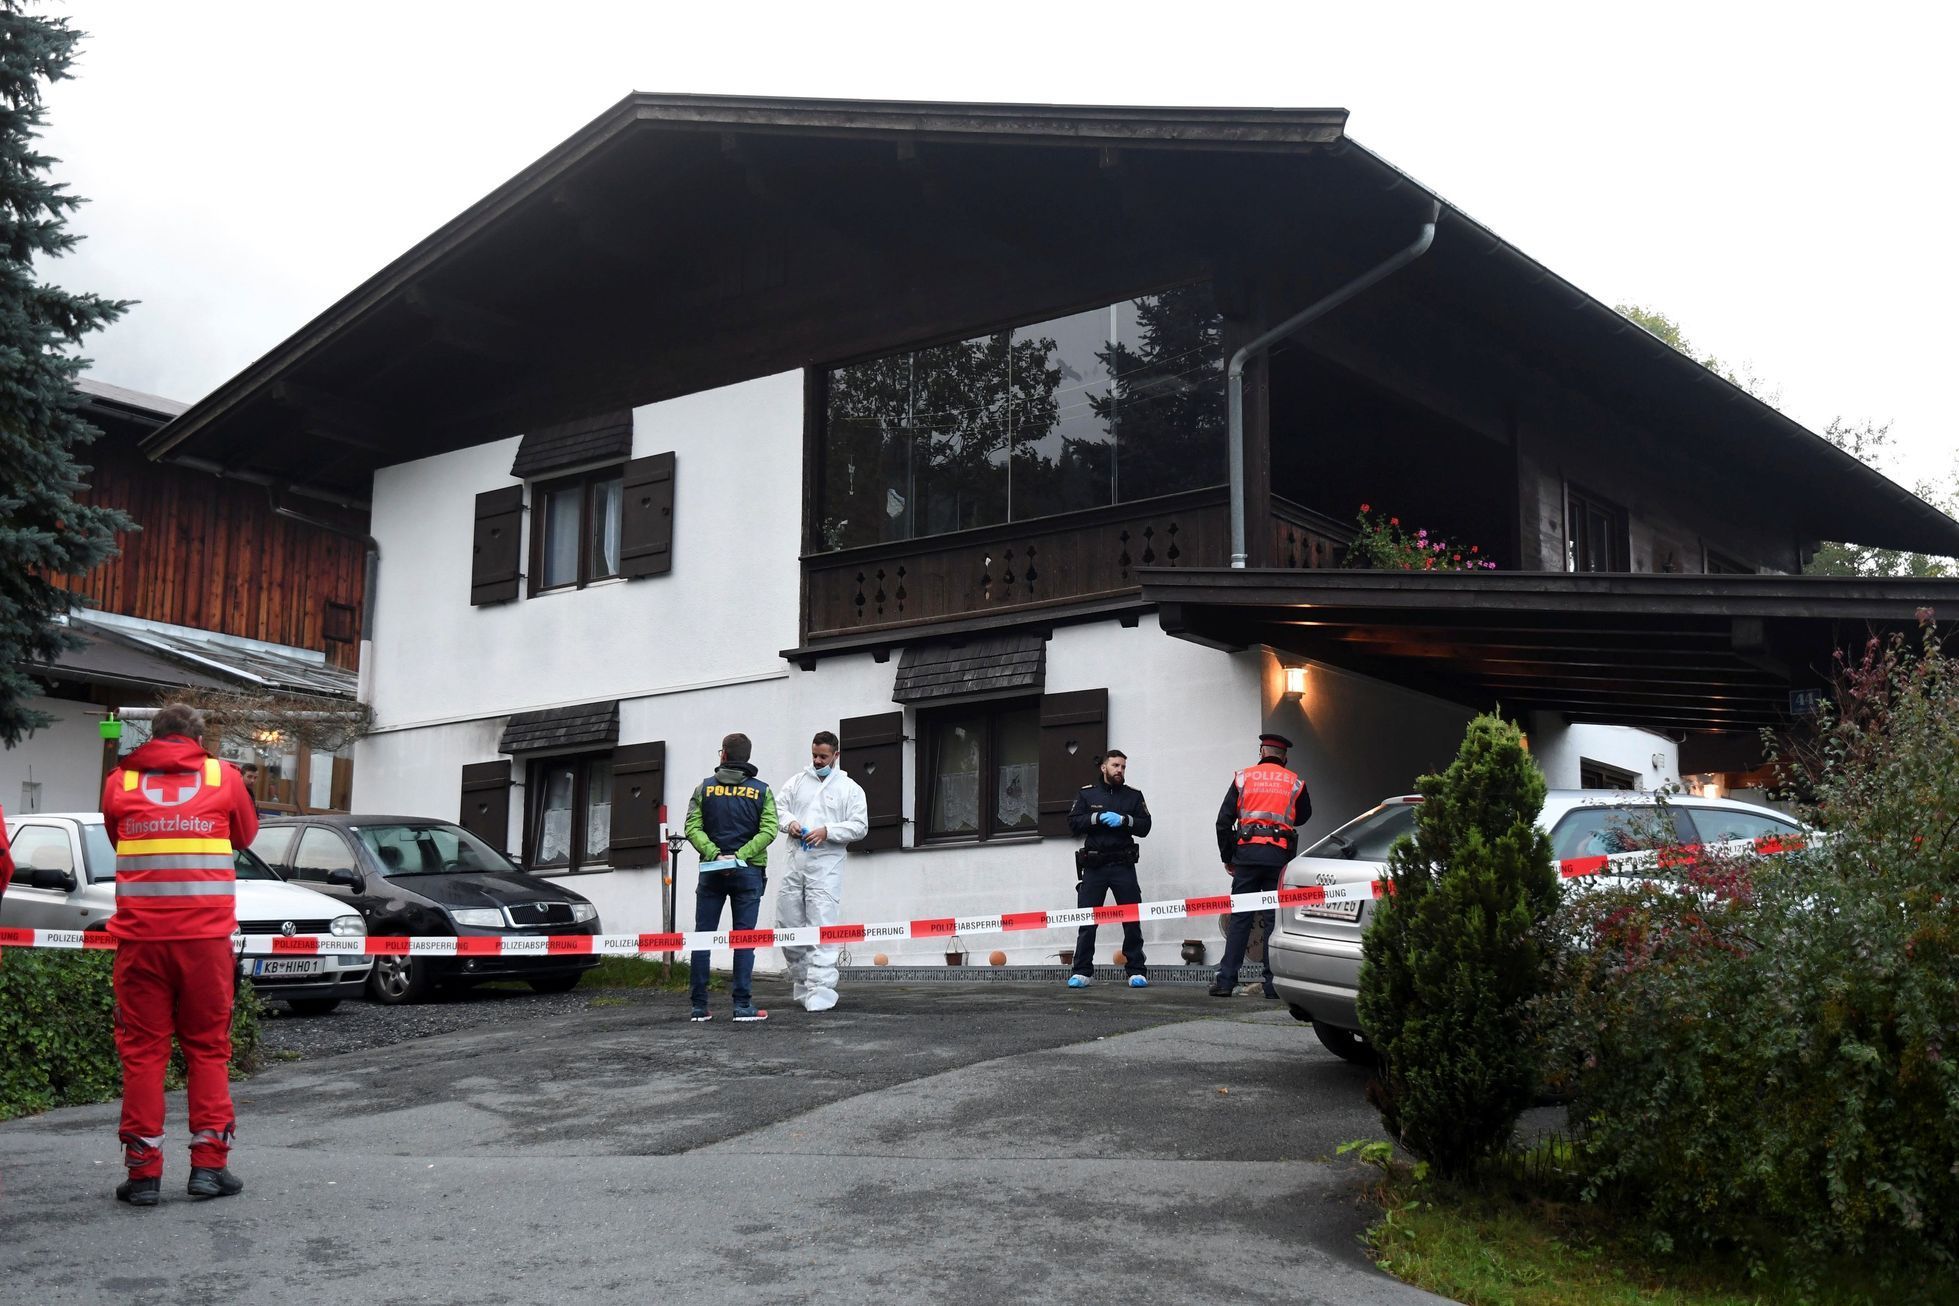 Dům v Kitzbühelu, kde došlo k vraždě pěti lidí